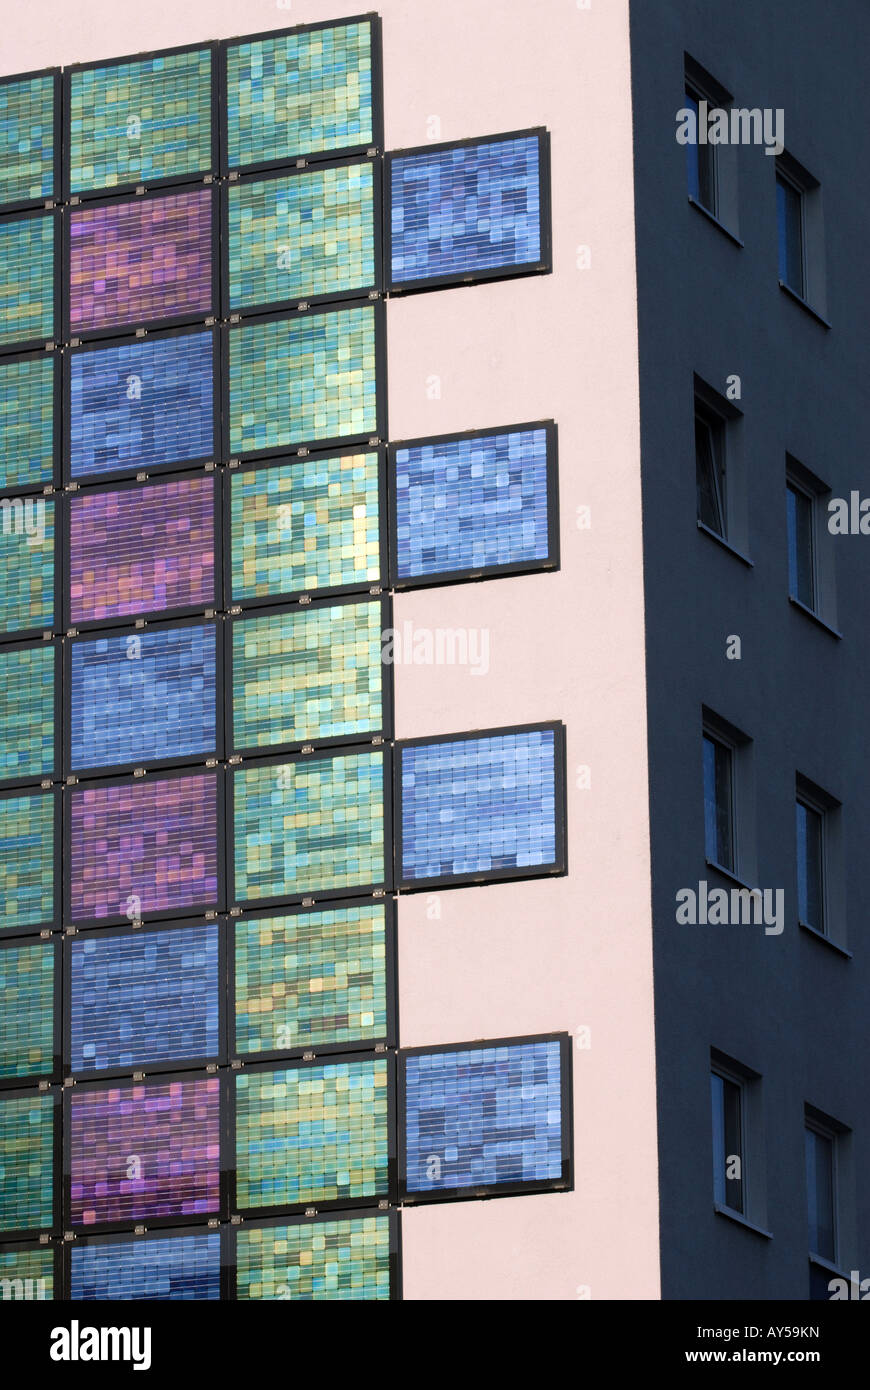 Farbige Solarzellen ausgestattet, um ein Appartementhaus, Bocklemund, Köln, Nordrhein-Westfalen, Deutschland. Stockfoto